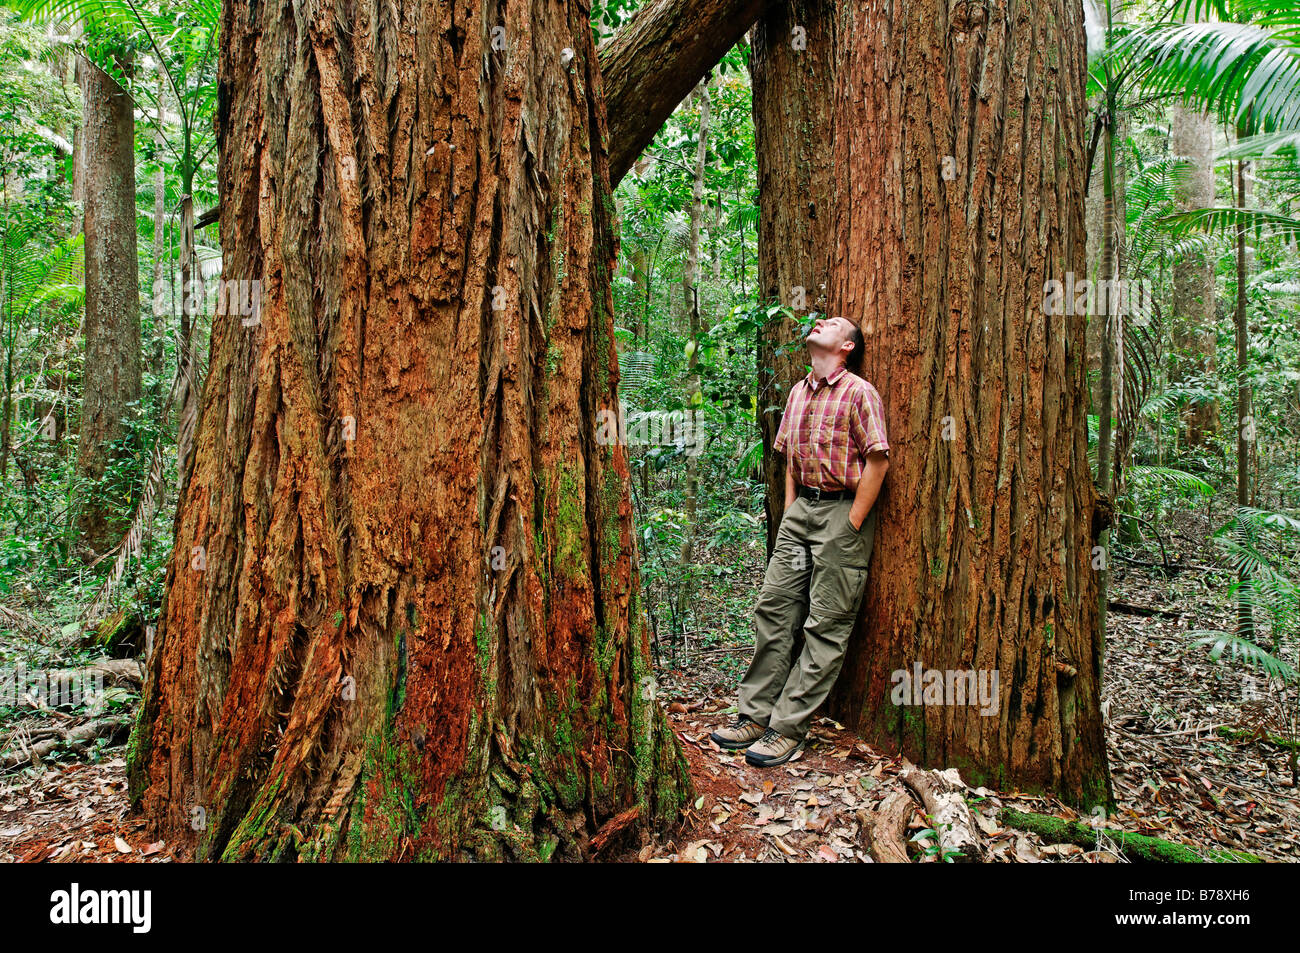 Uomo in una foresta pluviale con alberi di trementina (Syncarpia hillii), l'Isola di Fraser, Queensland, Australia Foto Stock